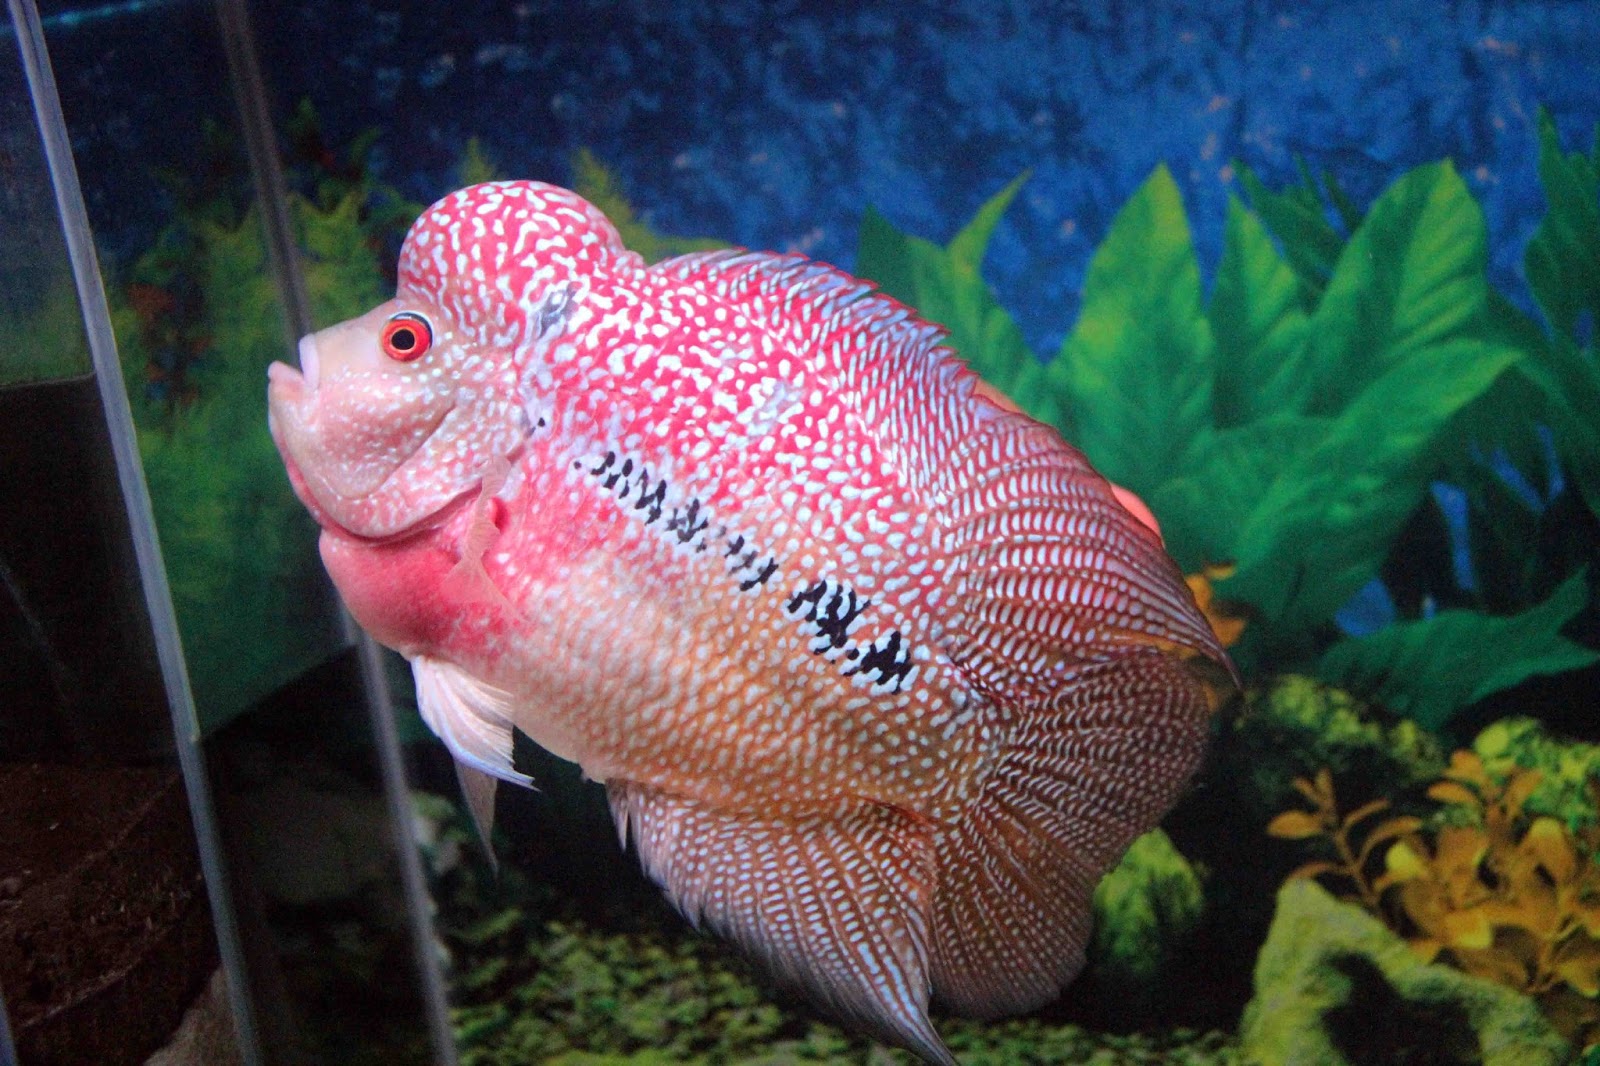 Wallpaper Ikan Bergerak Dalam Aquarium Images Hewan Lucu Terbaru